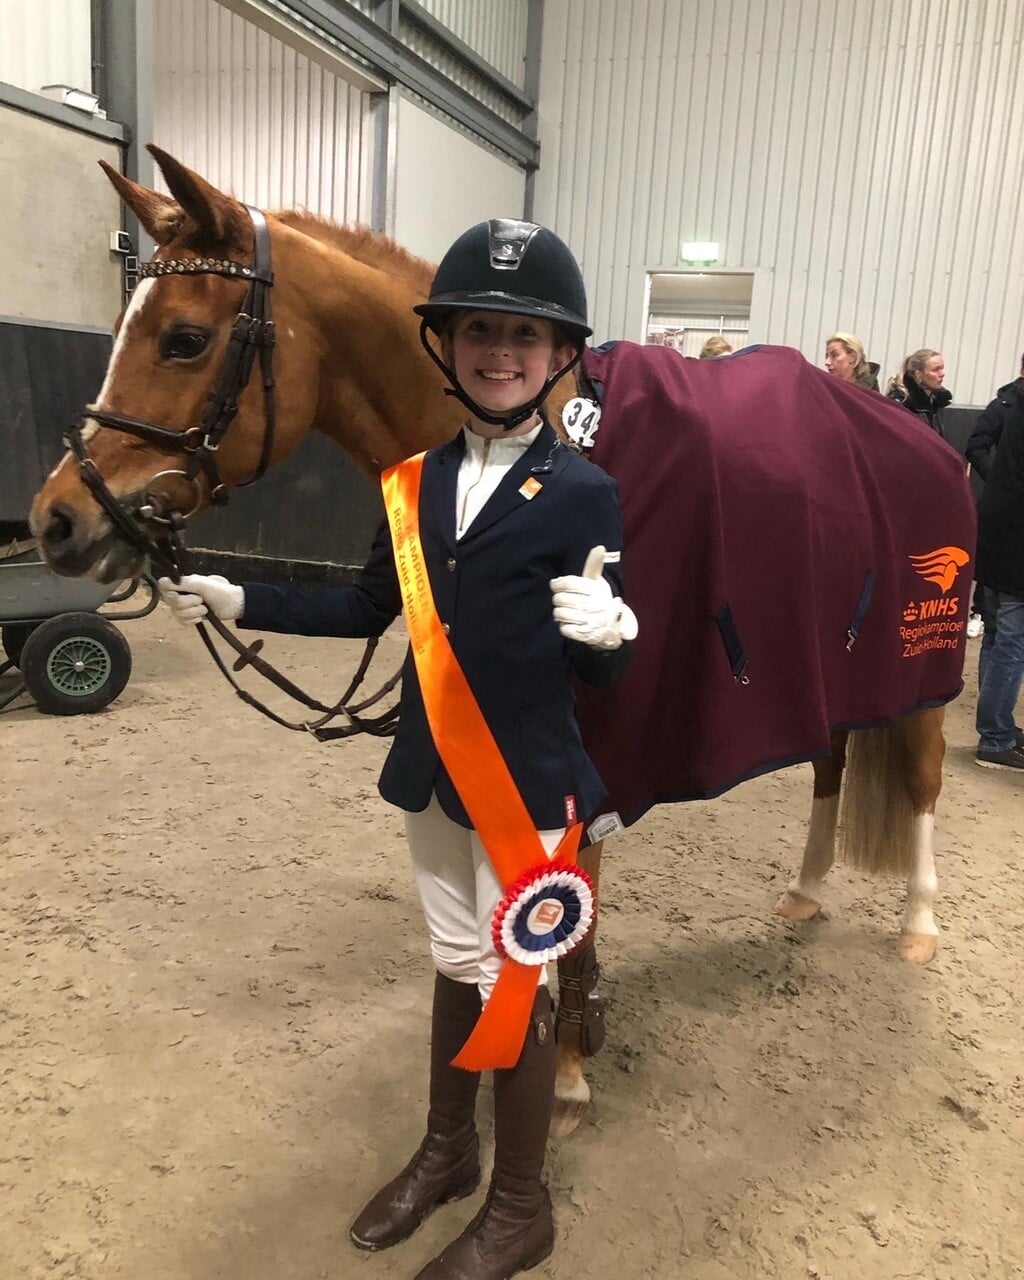 Mesina den Tuinder is kampioen geworden in Zuid-Holland in de klasse L/C 80 cm. Dit resultaat behaalde ze samen met haar pony Candy. Dit betekent dat ze 19 maart naar het NL in Ermelo mag. Succes Mesina en trainer Jordy Duijndam!